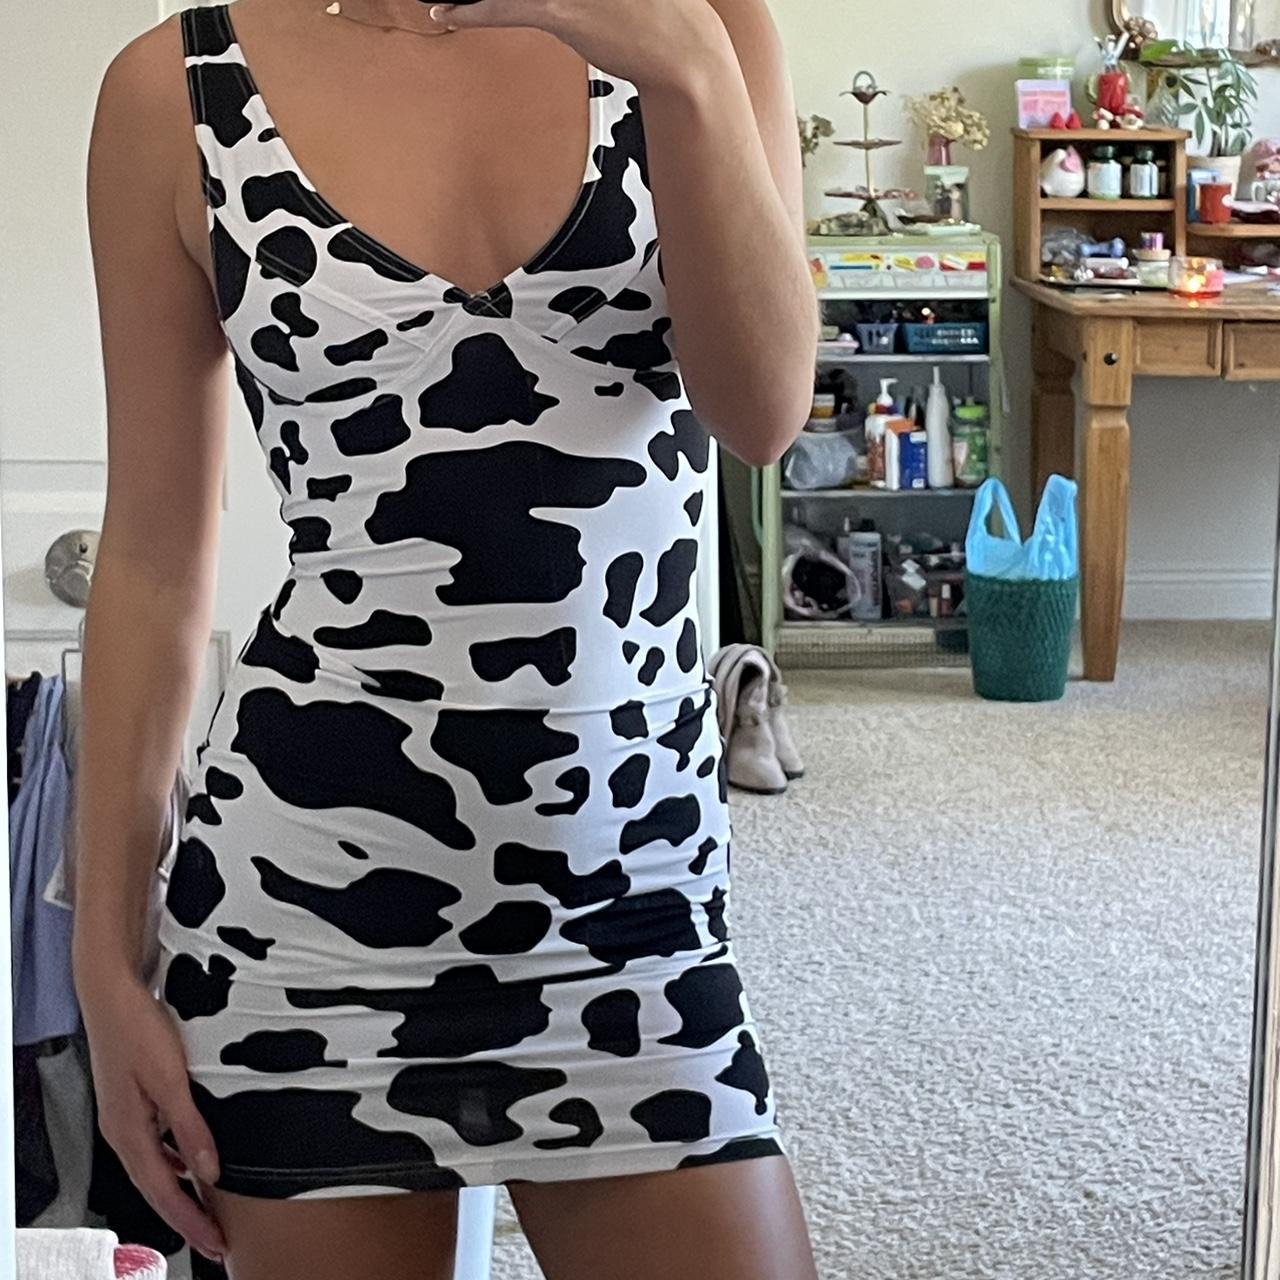 Long cow print dress Size 2XL - Depop